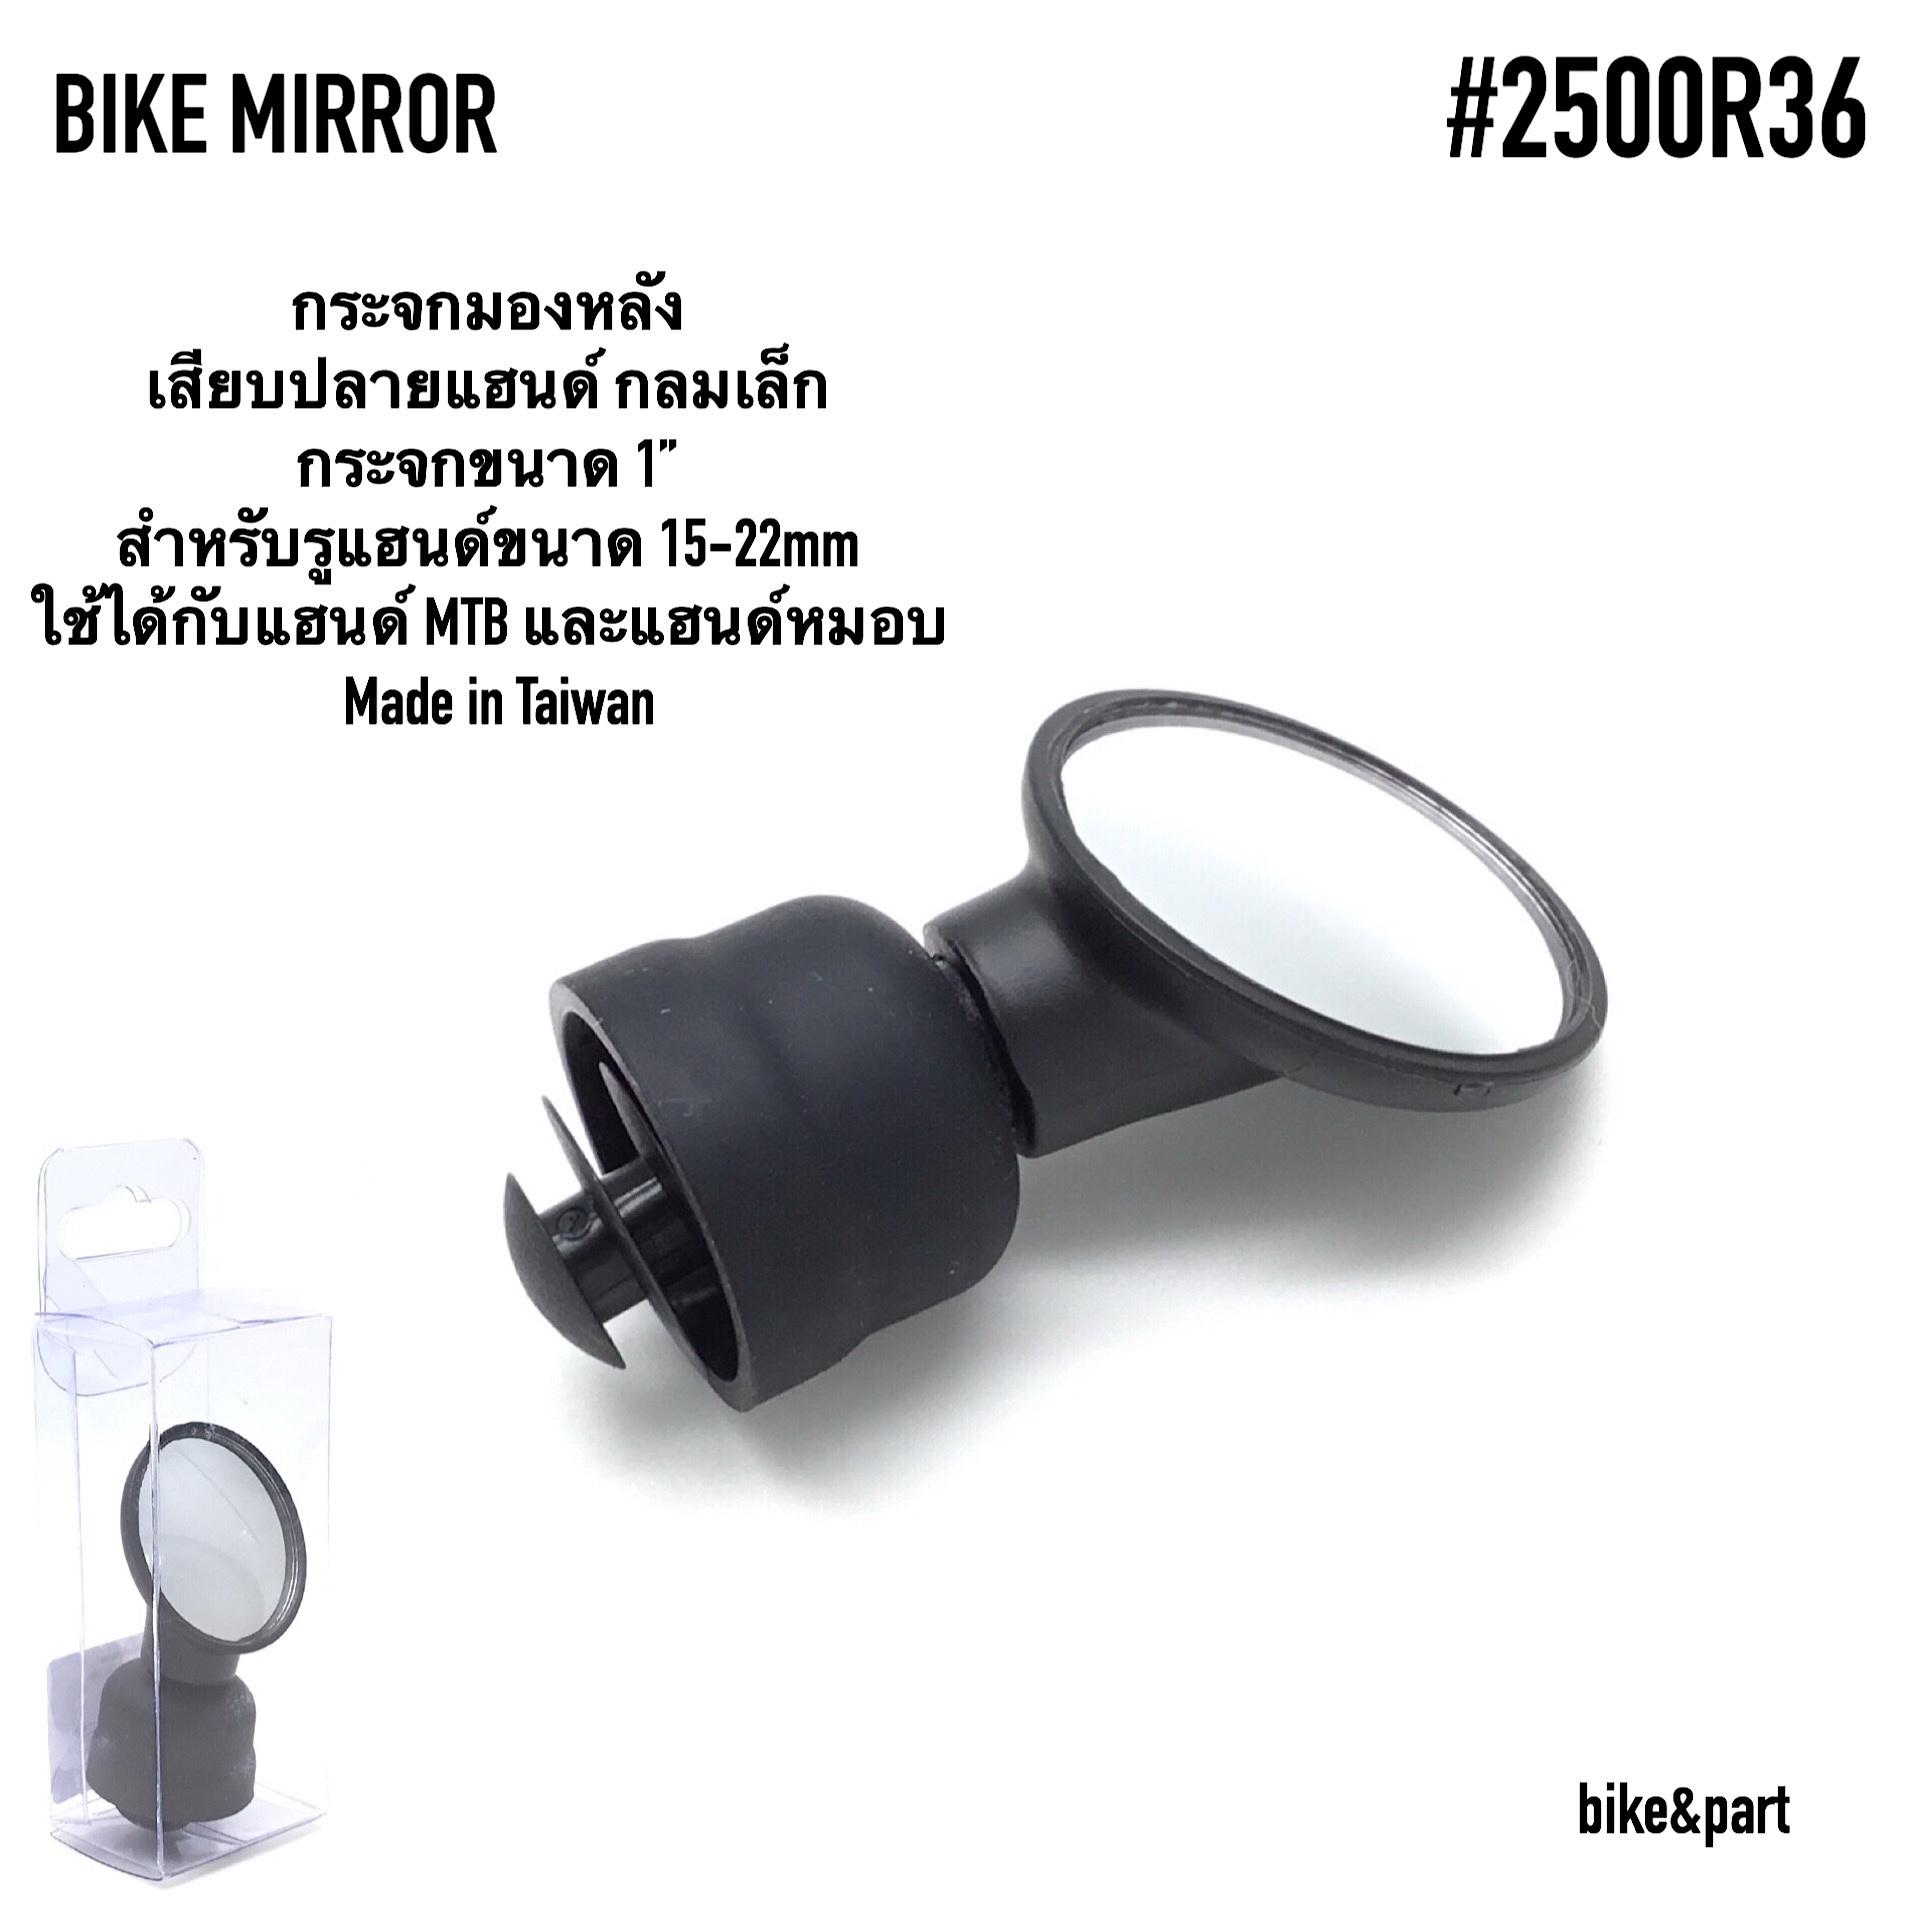 กระจกมองหลังจักรยาน เสียบปลายแฮนด์เสือหมอบ กลมเล็ก #2500R36